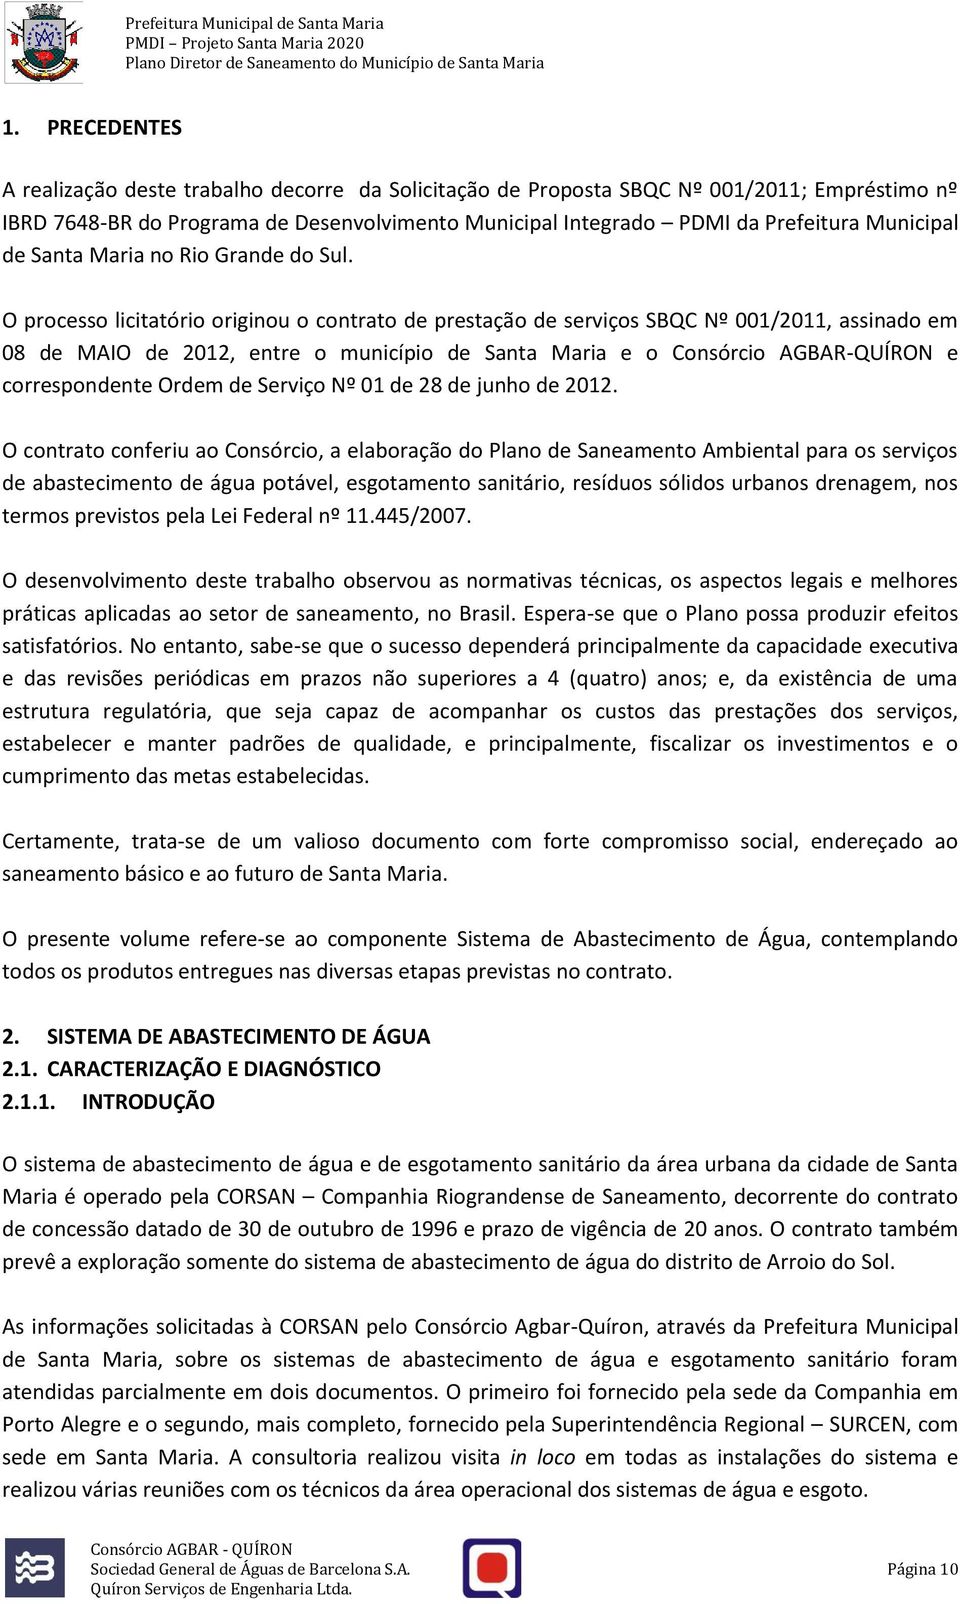 O processo licitatório originou o contrato de prestação de serviços SBQC Nº 001/2011, assinado em 08 de MAIO de 2012, entre o município de Santa Maria e o Consórcio AGBAR-QUÍRON e correspondente